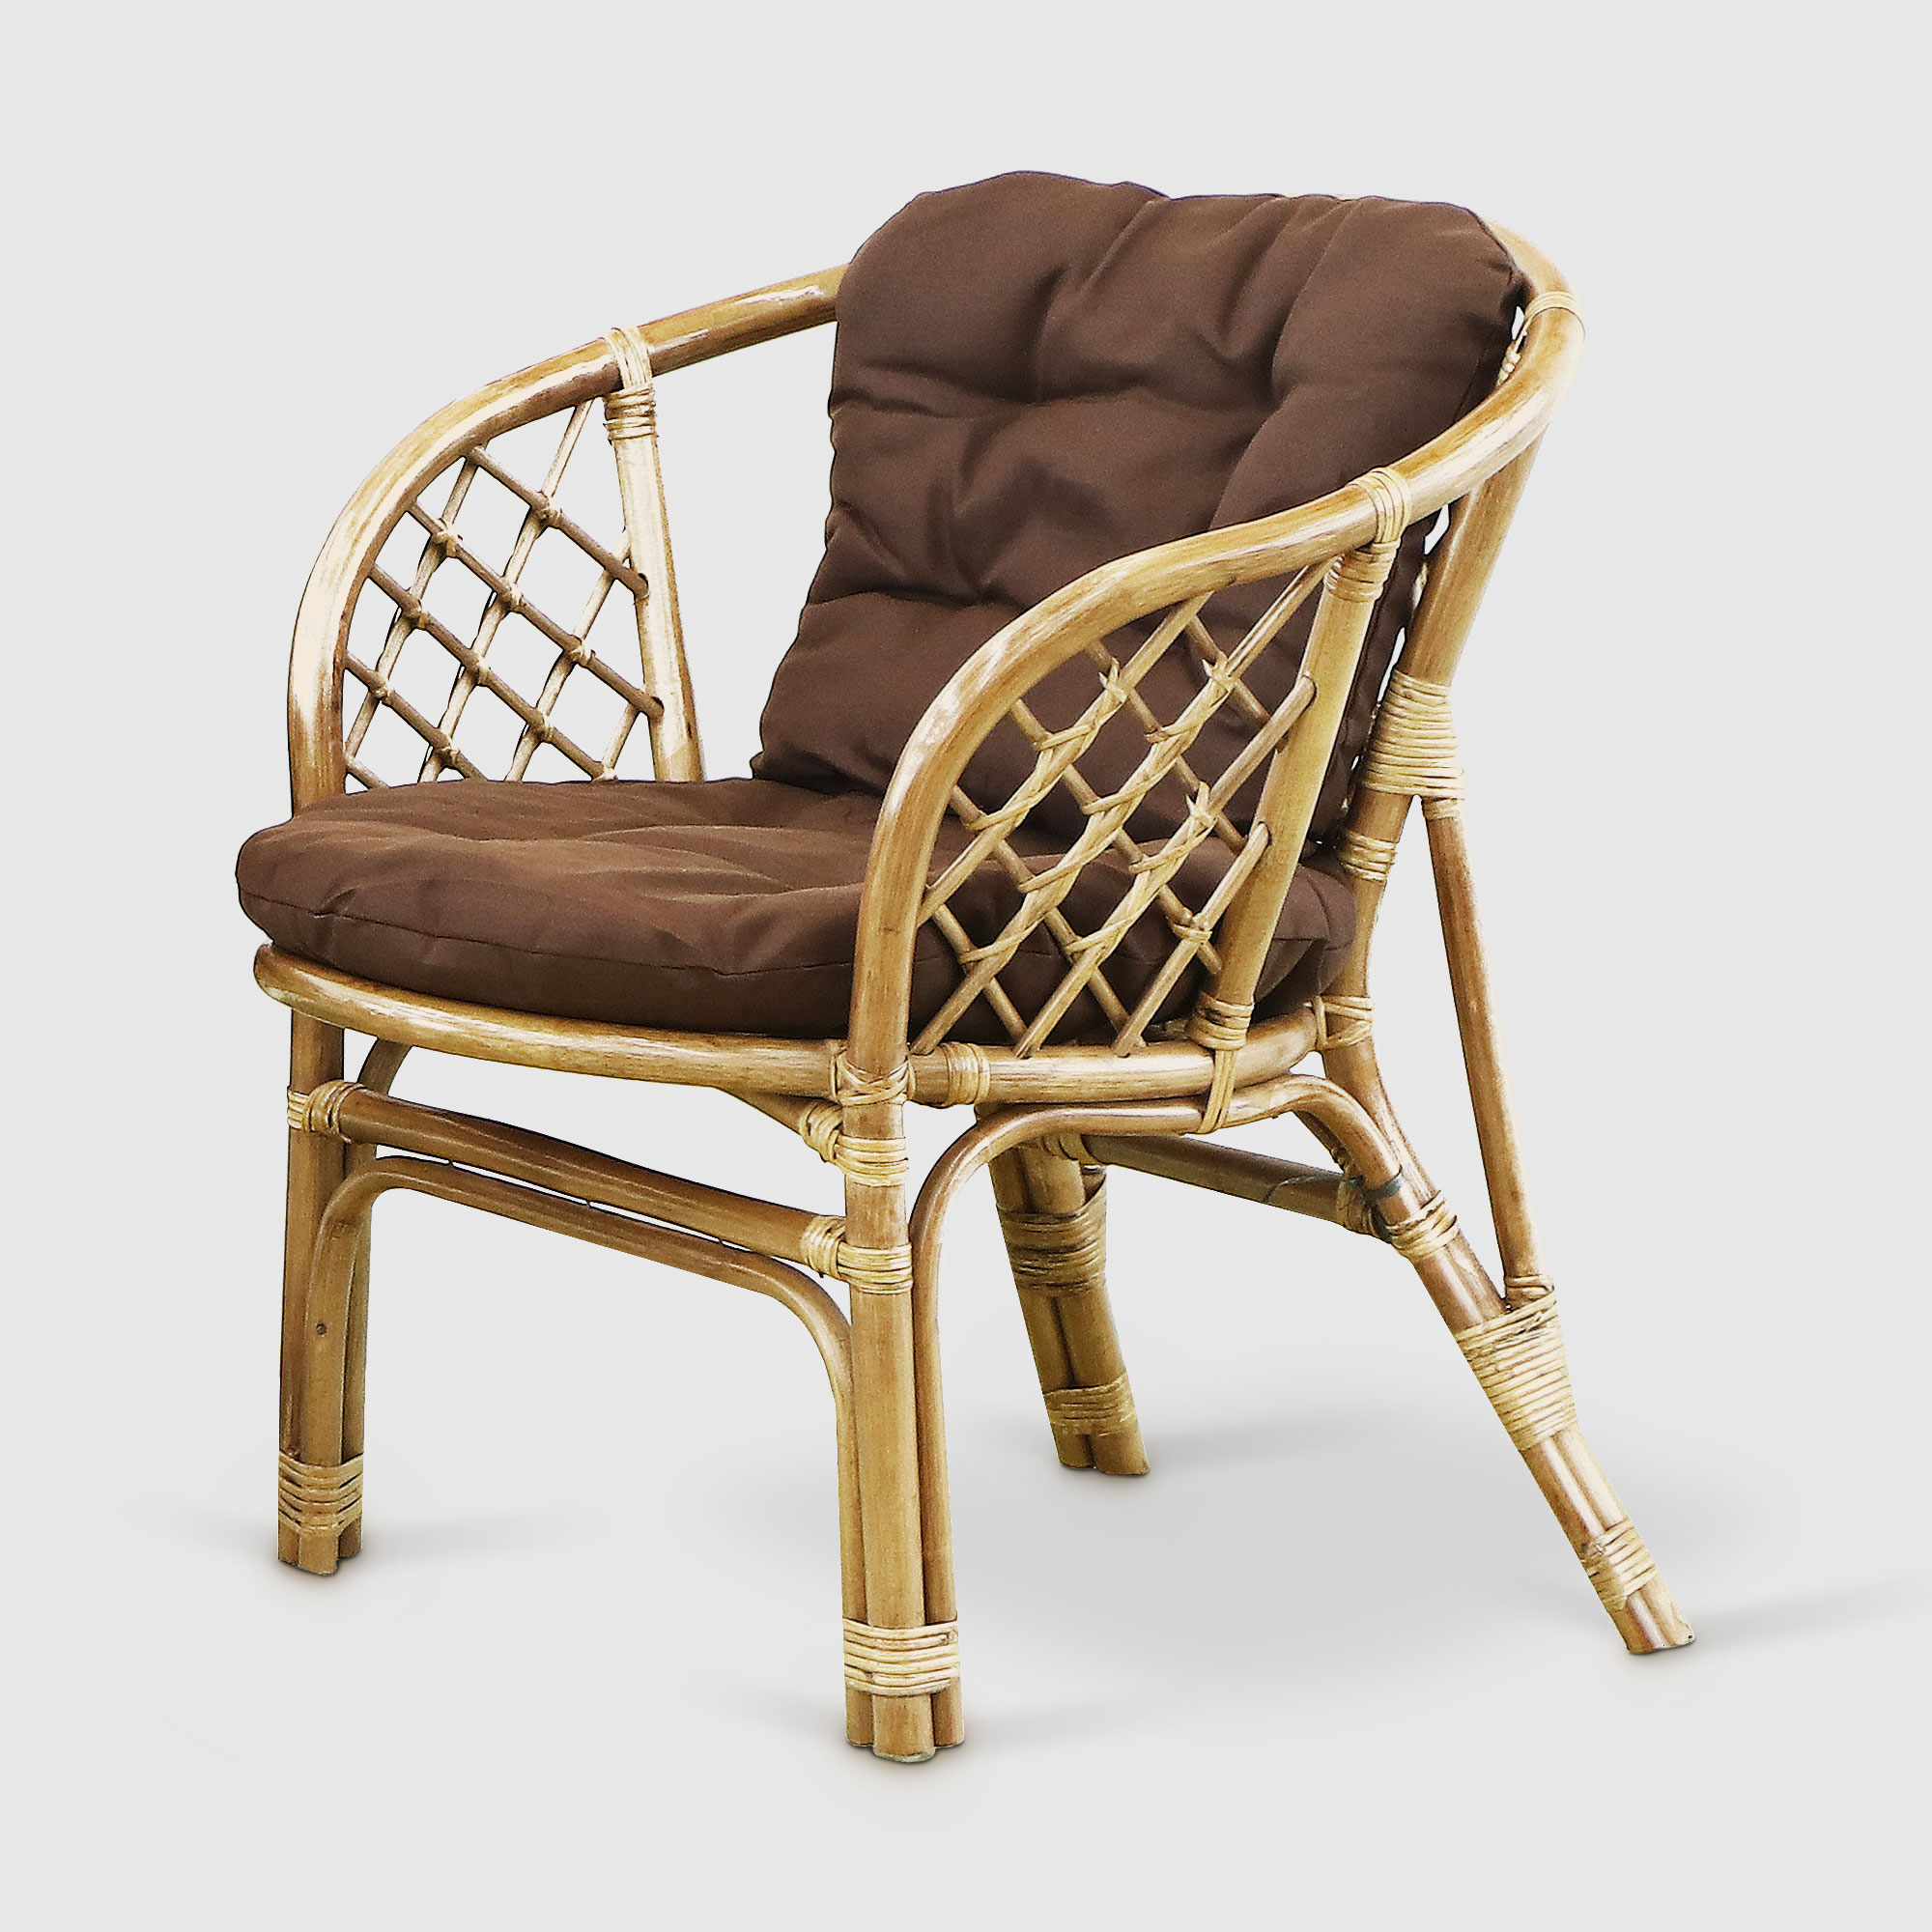 Комплект мебели Rattan grand toscana hon: диван, стол, 2 кресла, цвет светло-коричневый - фото 5